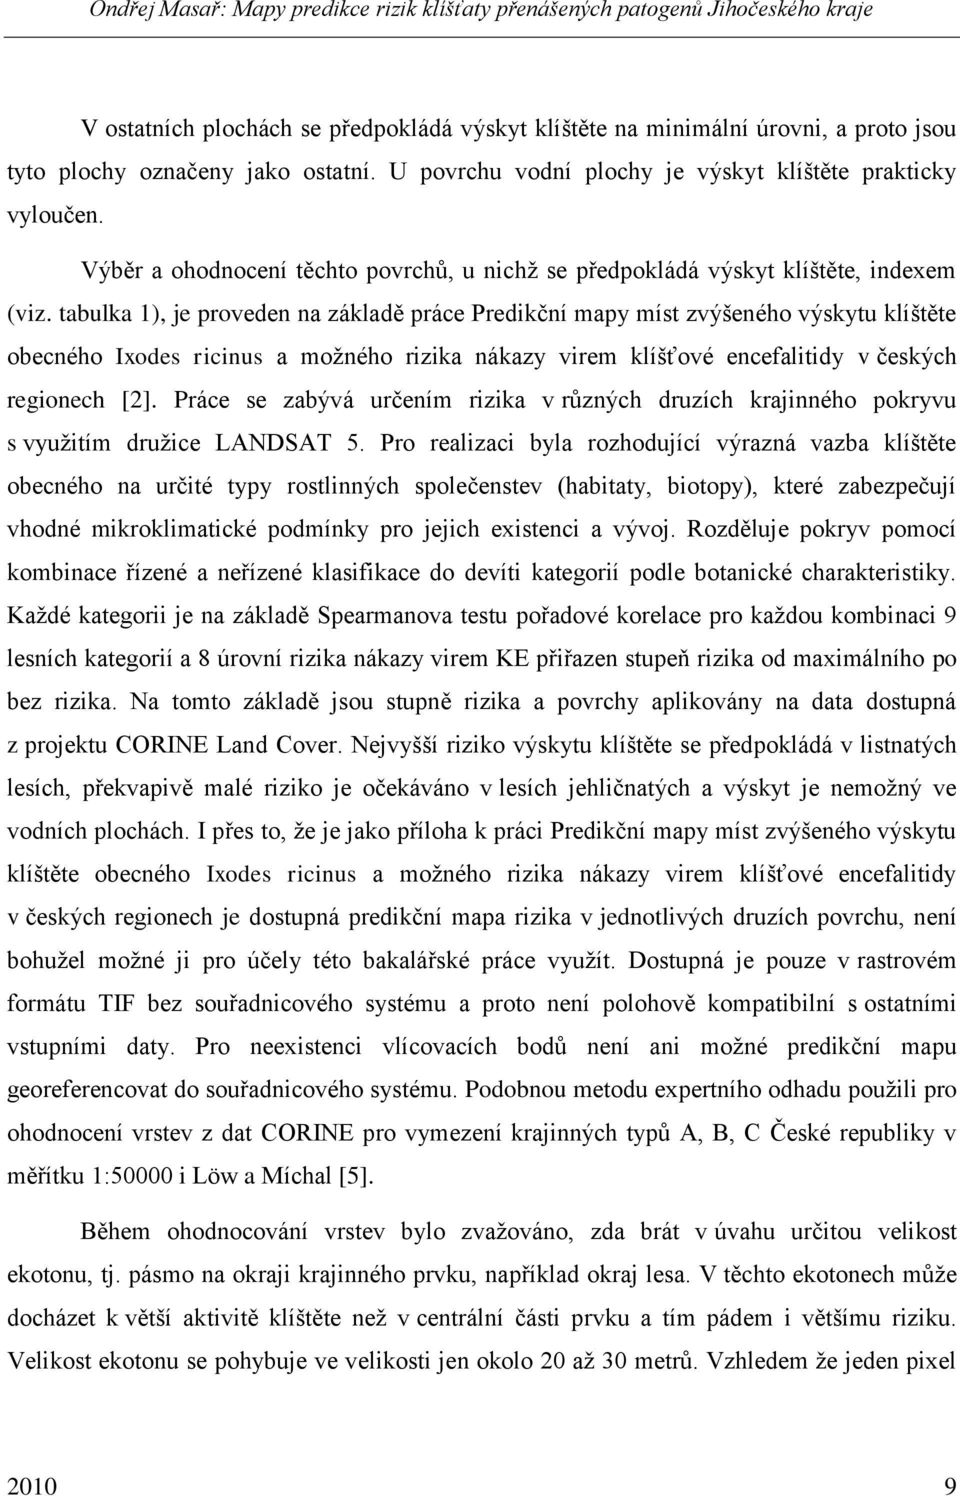 tabulka 1), je proveden na základě práce Predikční mapy míst zvýšeného výskytu klíštěte obecného Ixodes ricinus a moţného rizika nákazy virem klíšťové encefalitidy v českých regionech [2].